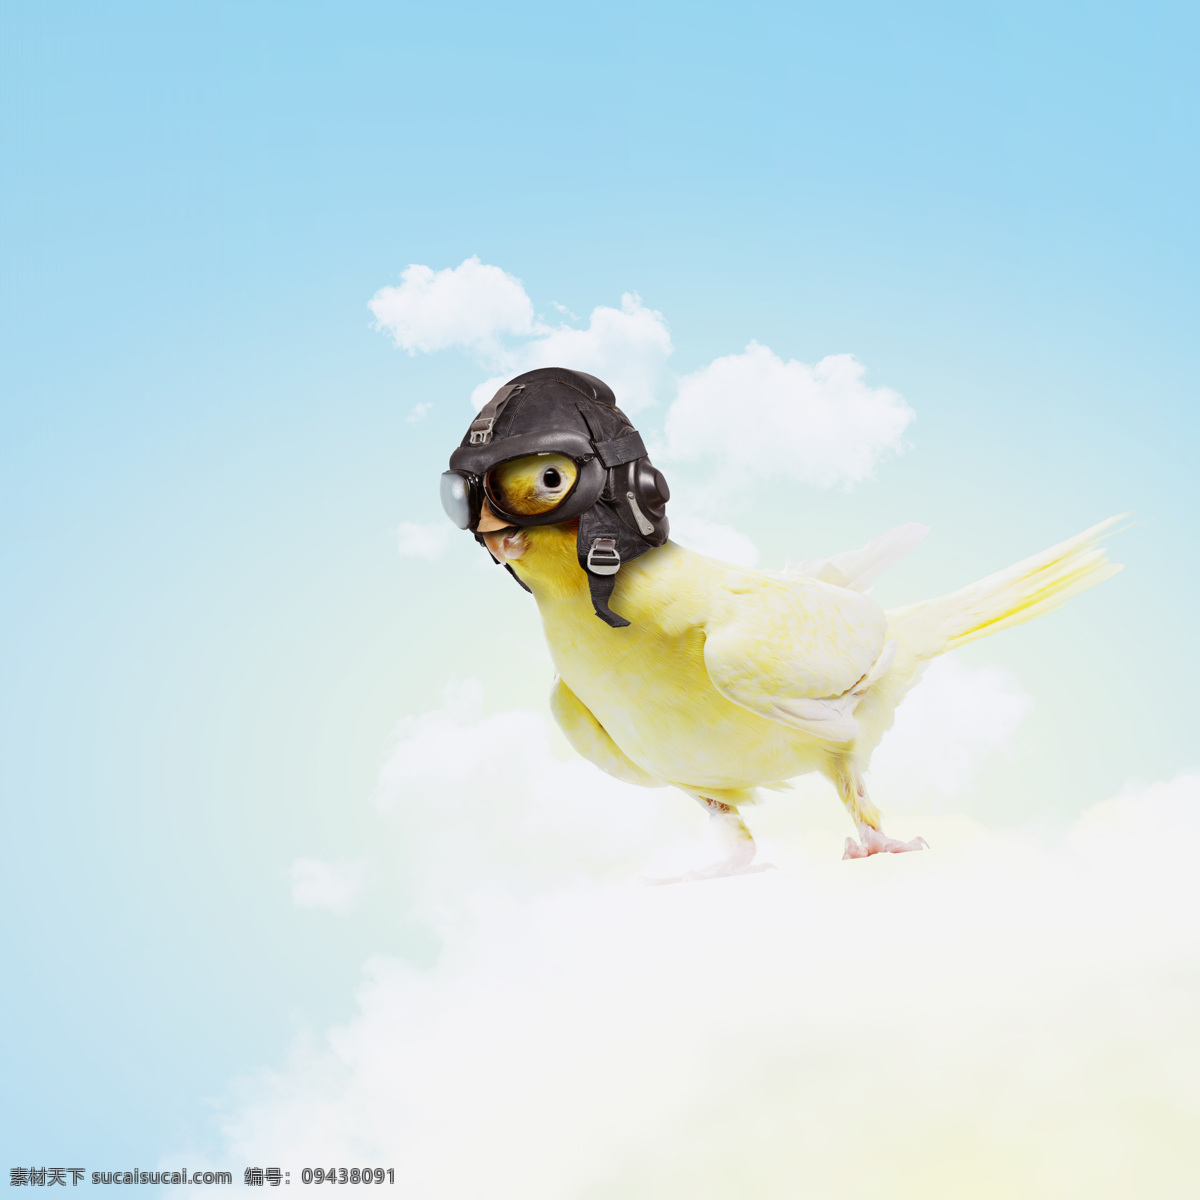 飞行员小鸟 蓝天 白云 飞行员 天空 小鸟 飞鸟 鸟类动物 飞禽 野生动物 动物摄影 空中飞鸟 生物世界 白色